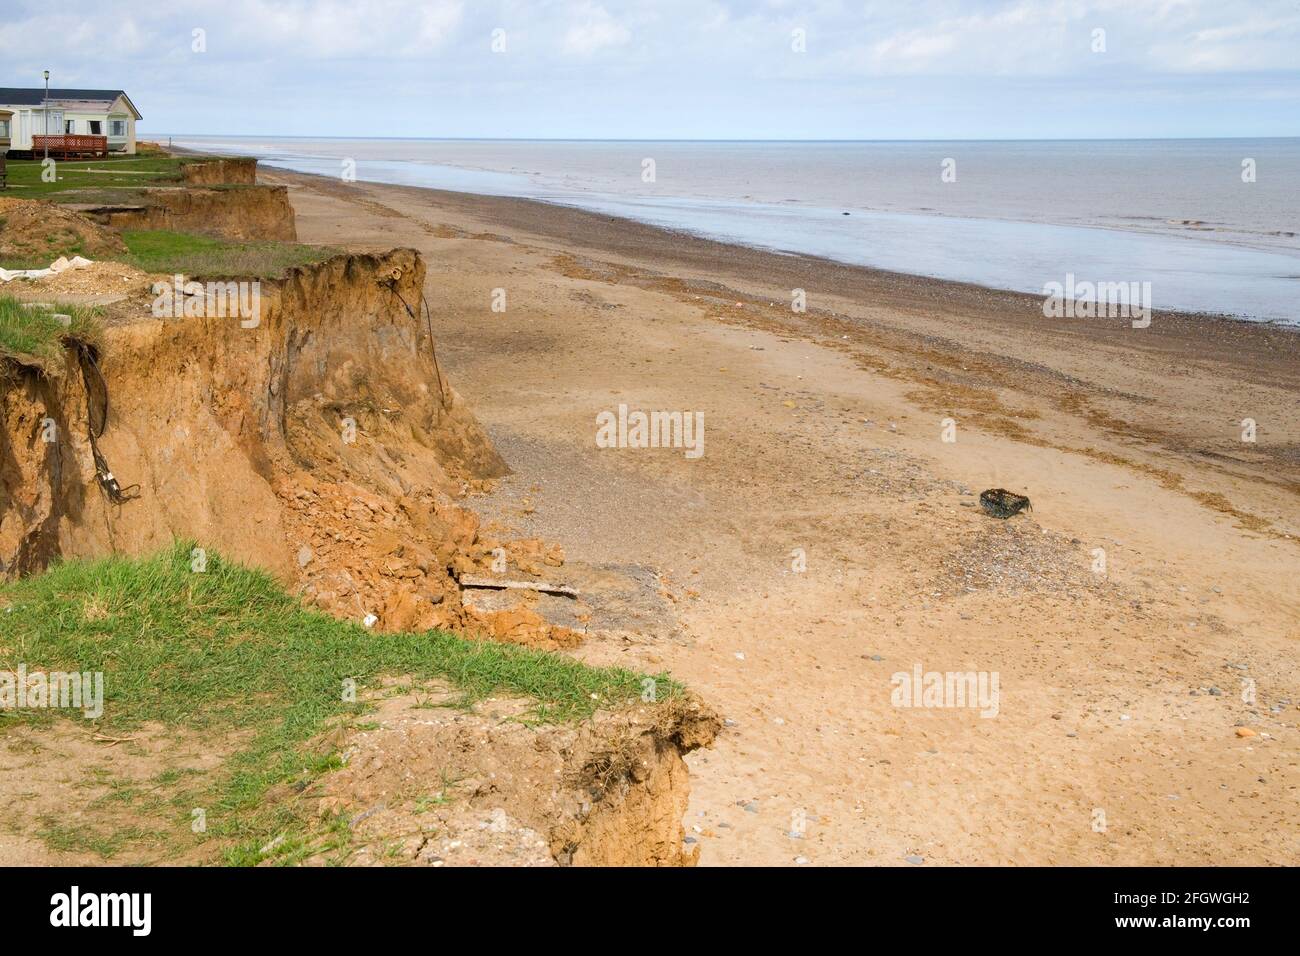 coastal erosion at easington on the yorkshire coast Stock Photo